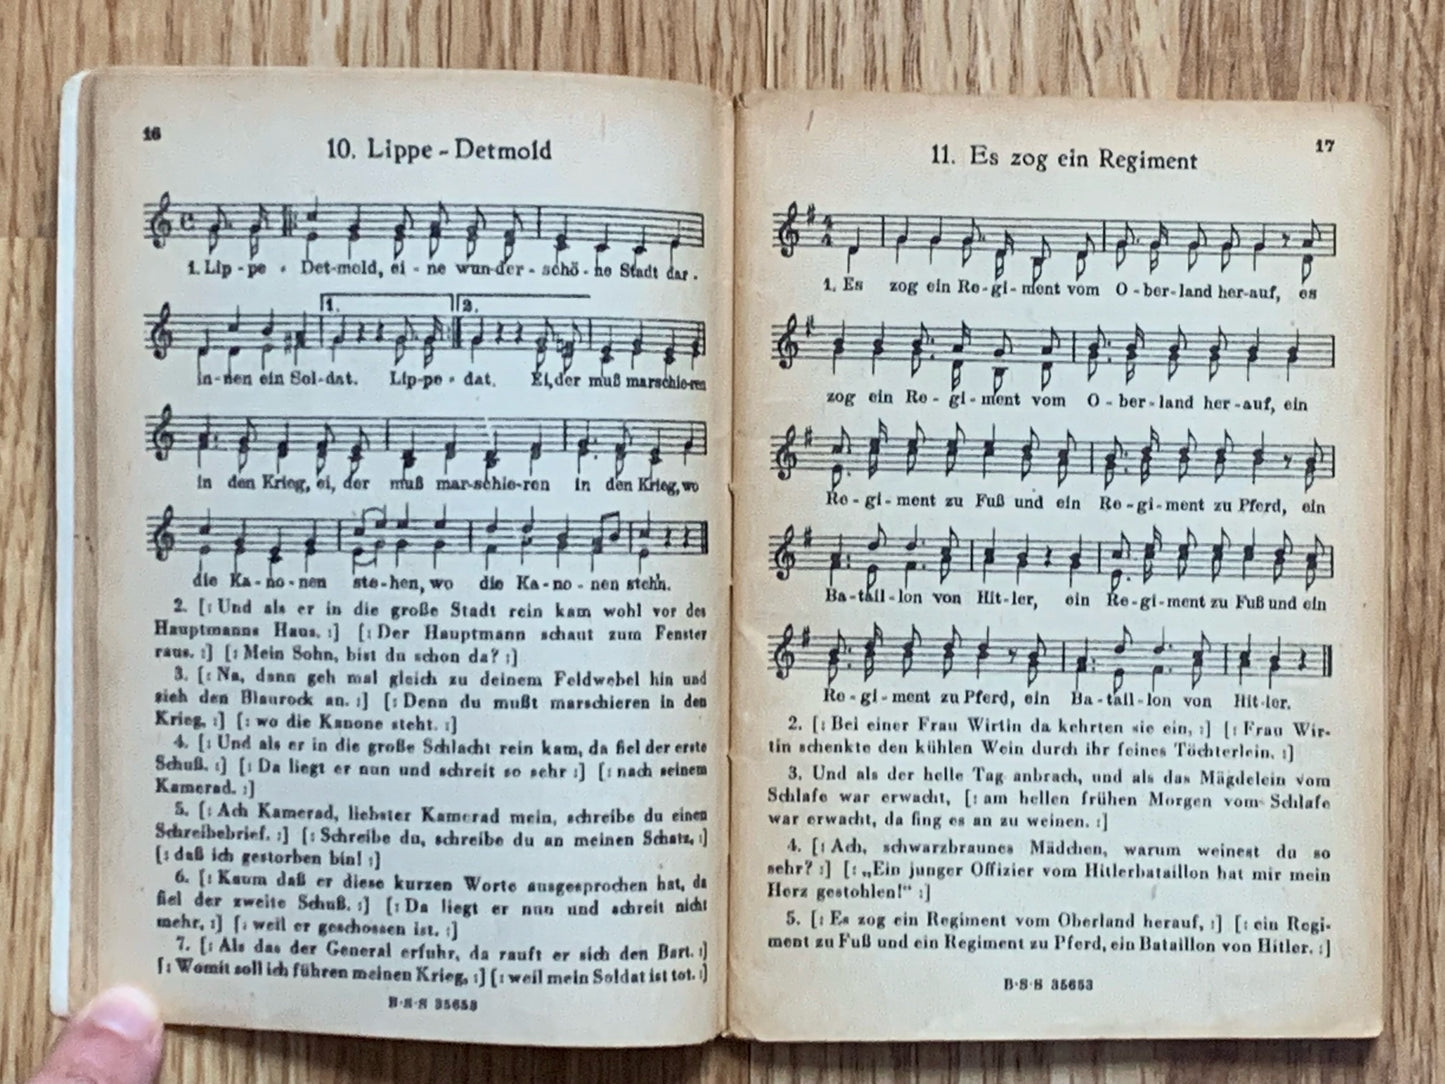 Das Neue Soldaten Liederbuch - WW2 German army songbook